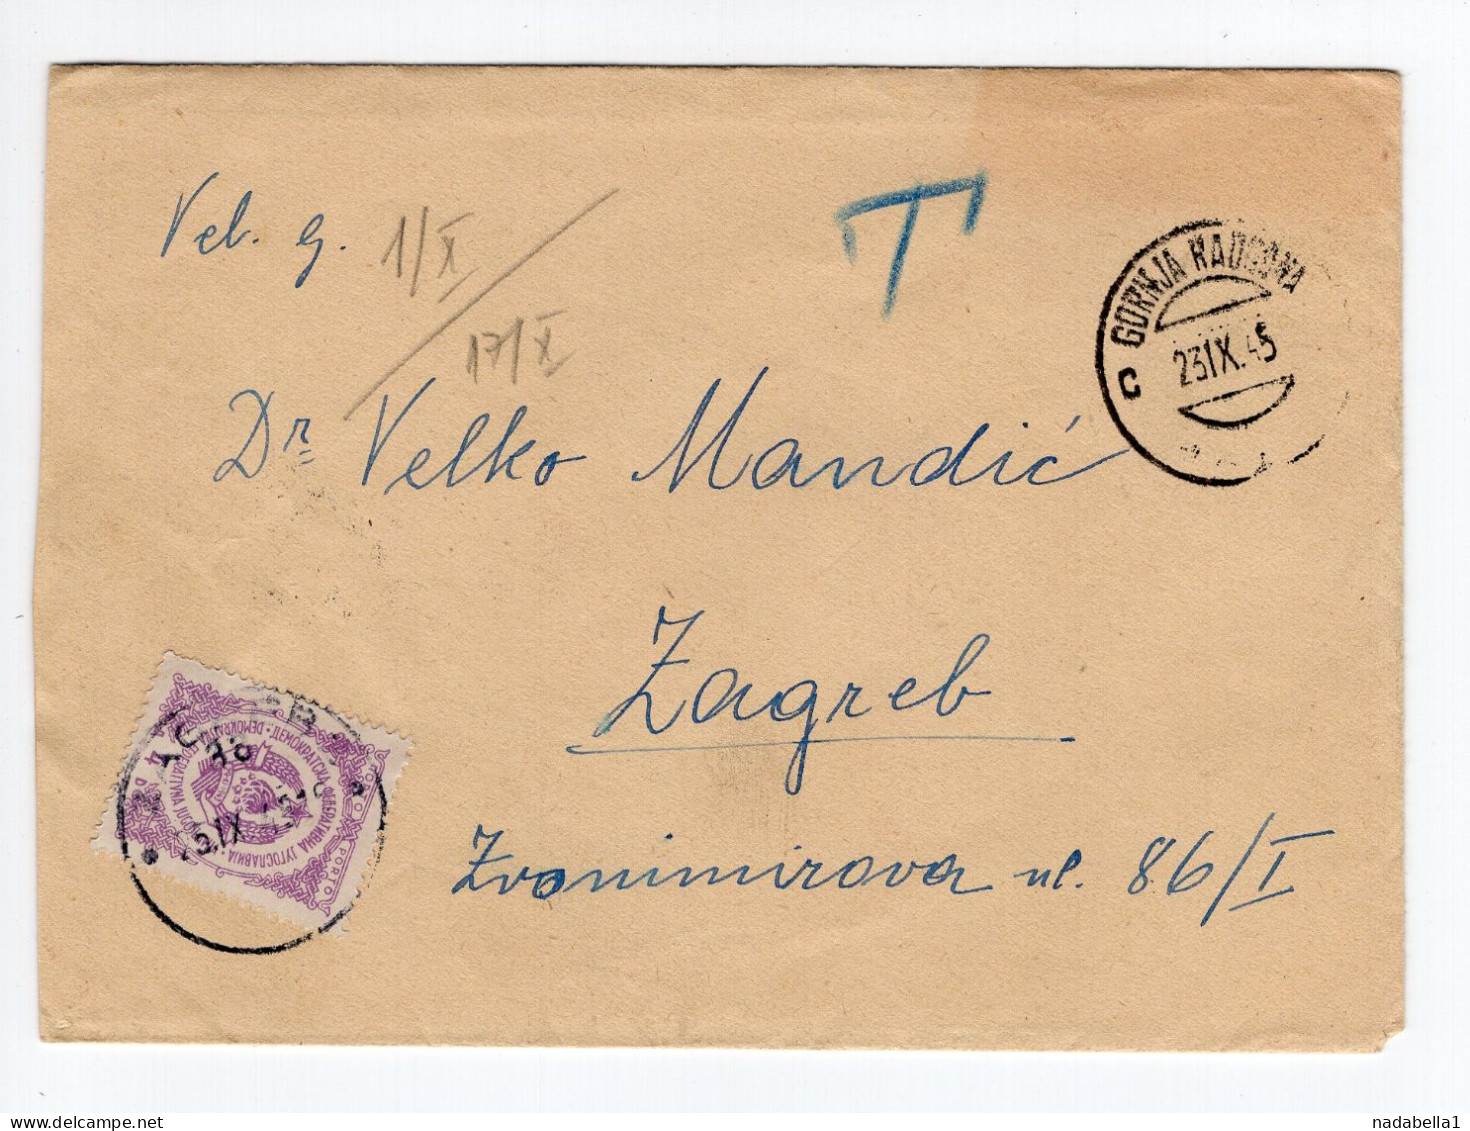 1945. YUGOSLAVIA,SLOVENIA,GORNJA RADGONA,NO STAMP COVER,POSTAGE DUE IN ZAGREB - Portomarken